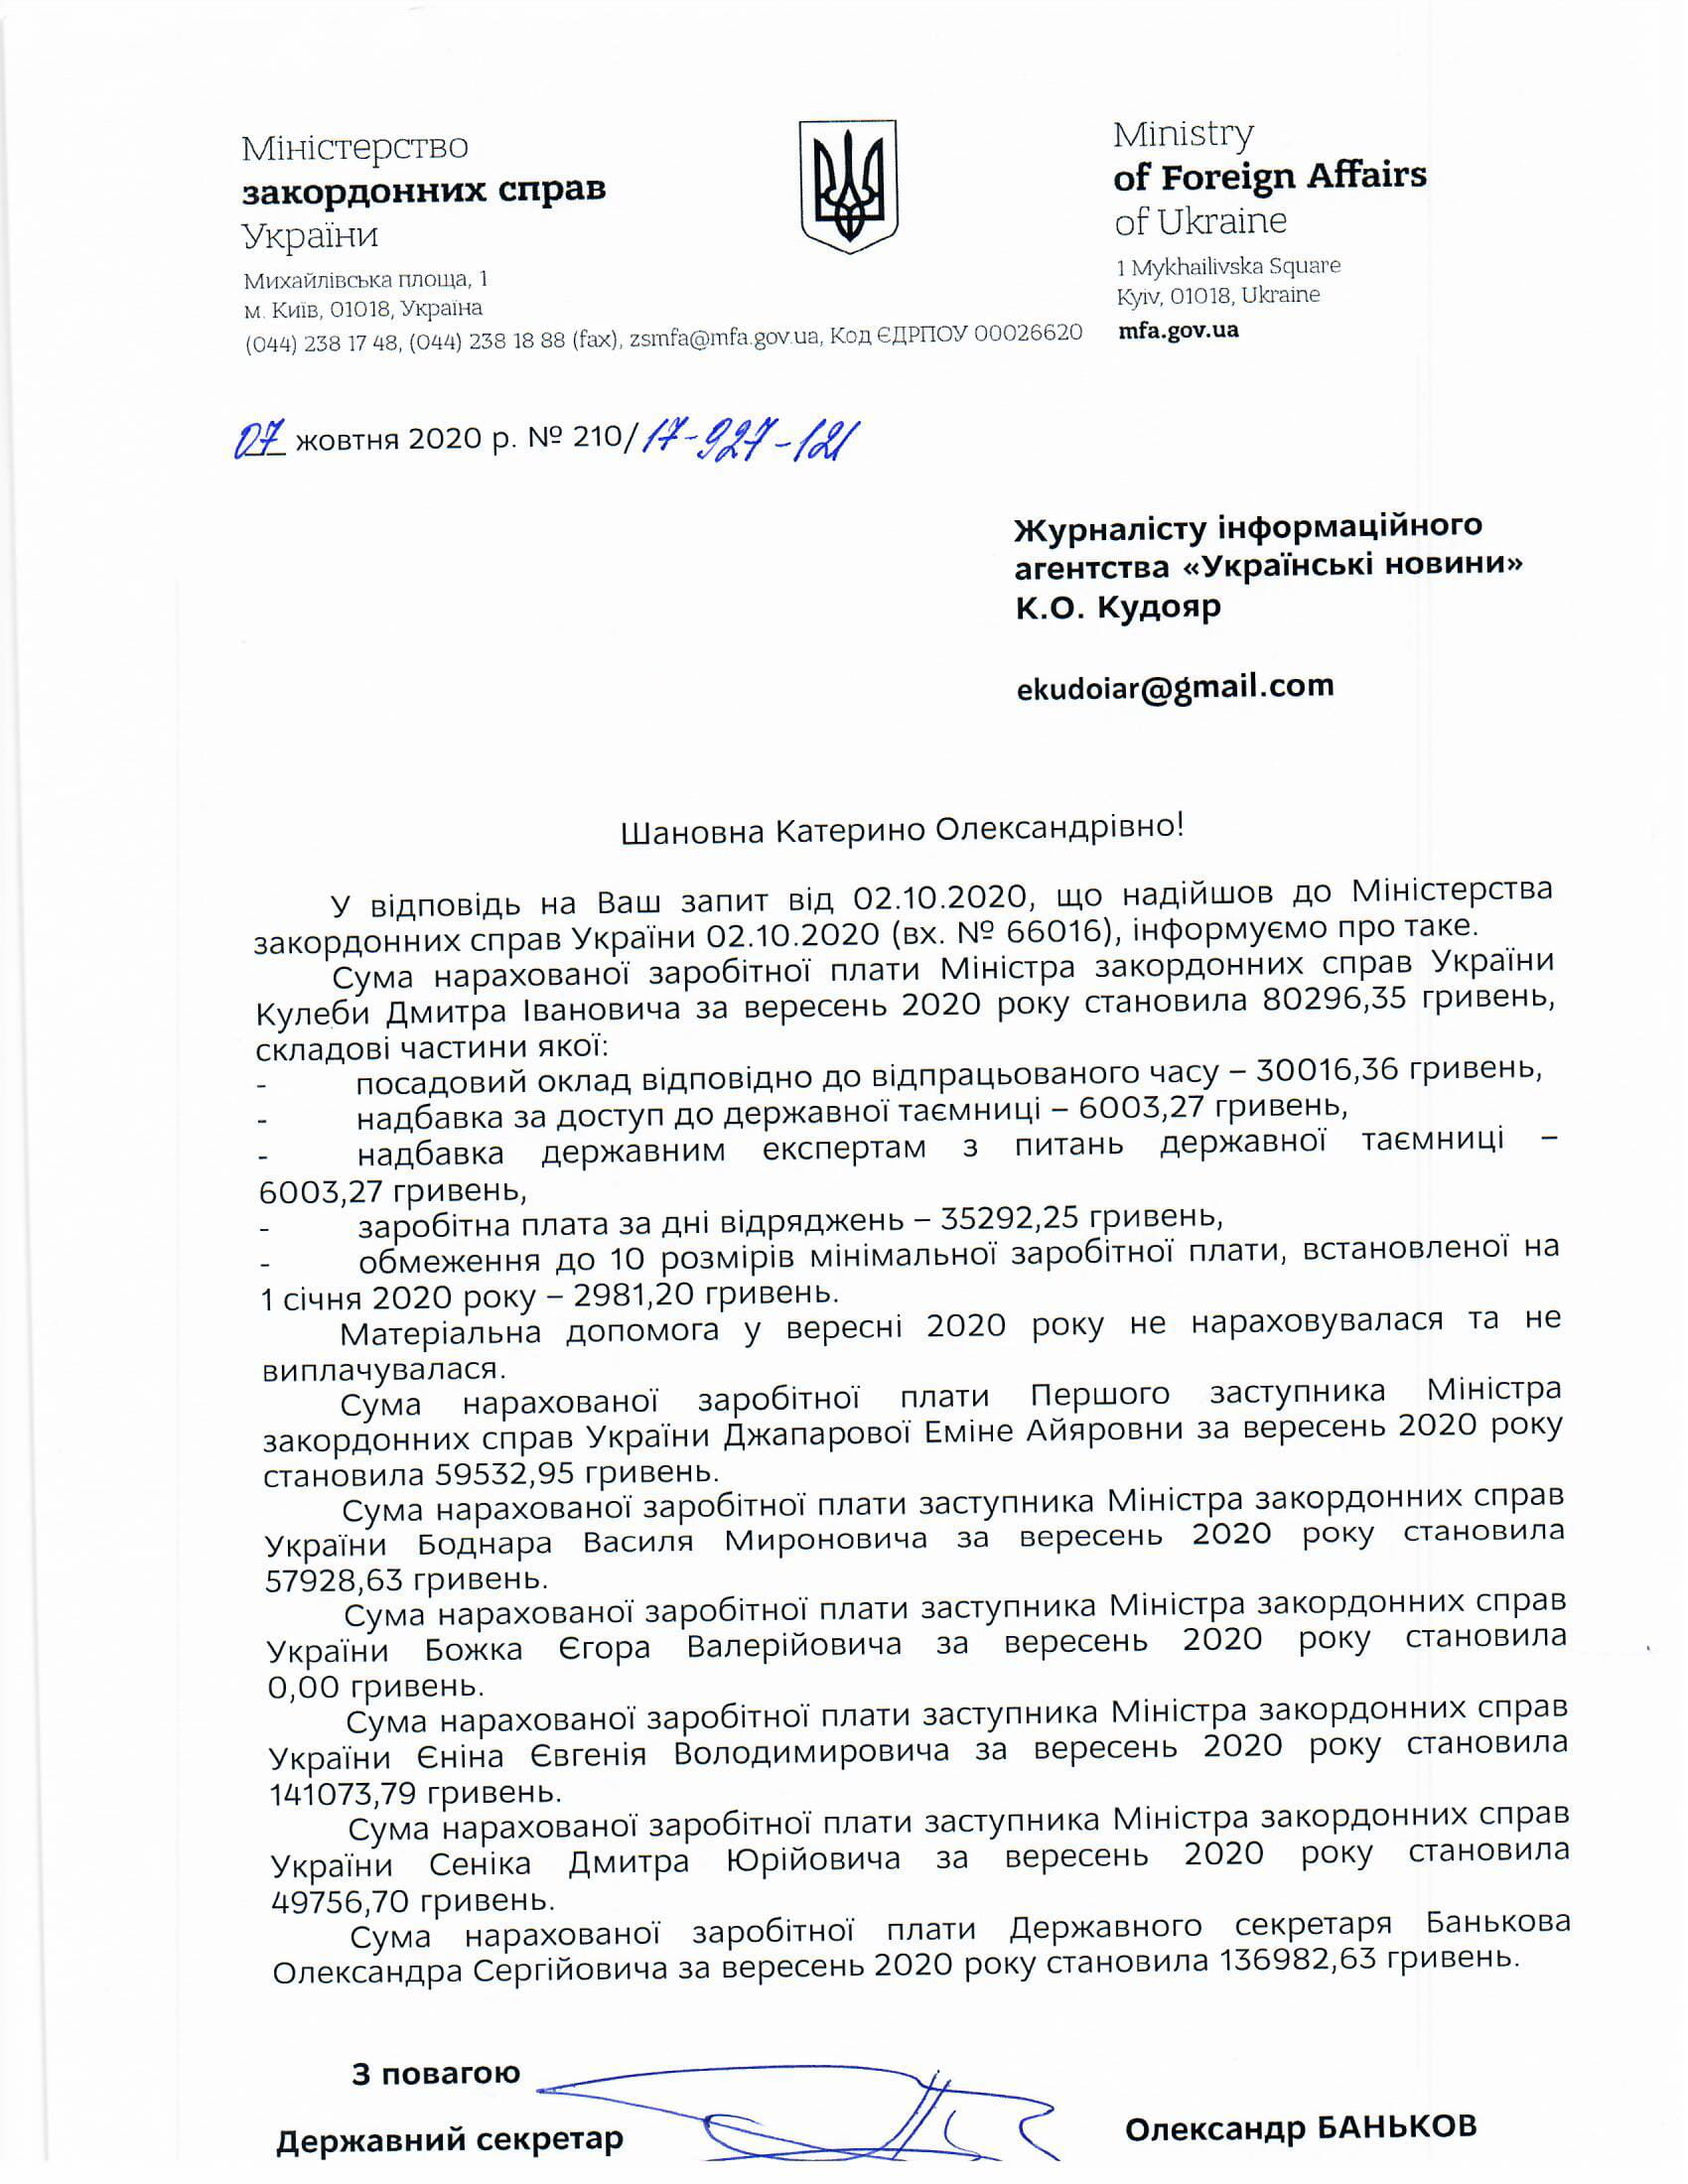 Зарплата Кулебы в сентябре с доплатой за доступ к гостайне составила почти 80 тысяч гривен. Скан: Украинские Новости